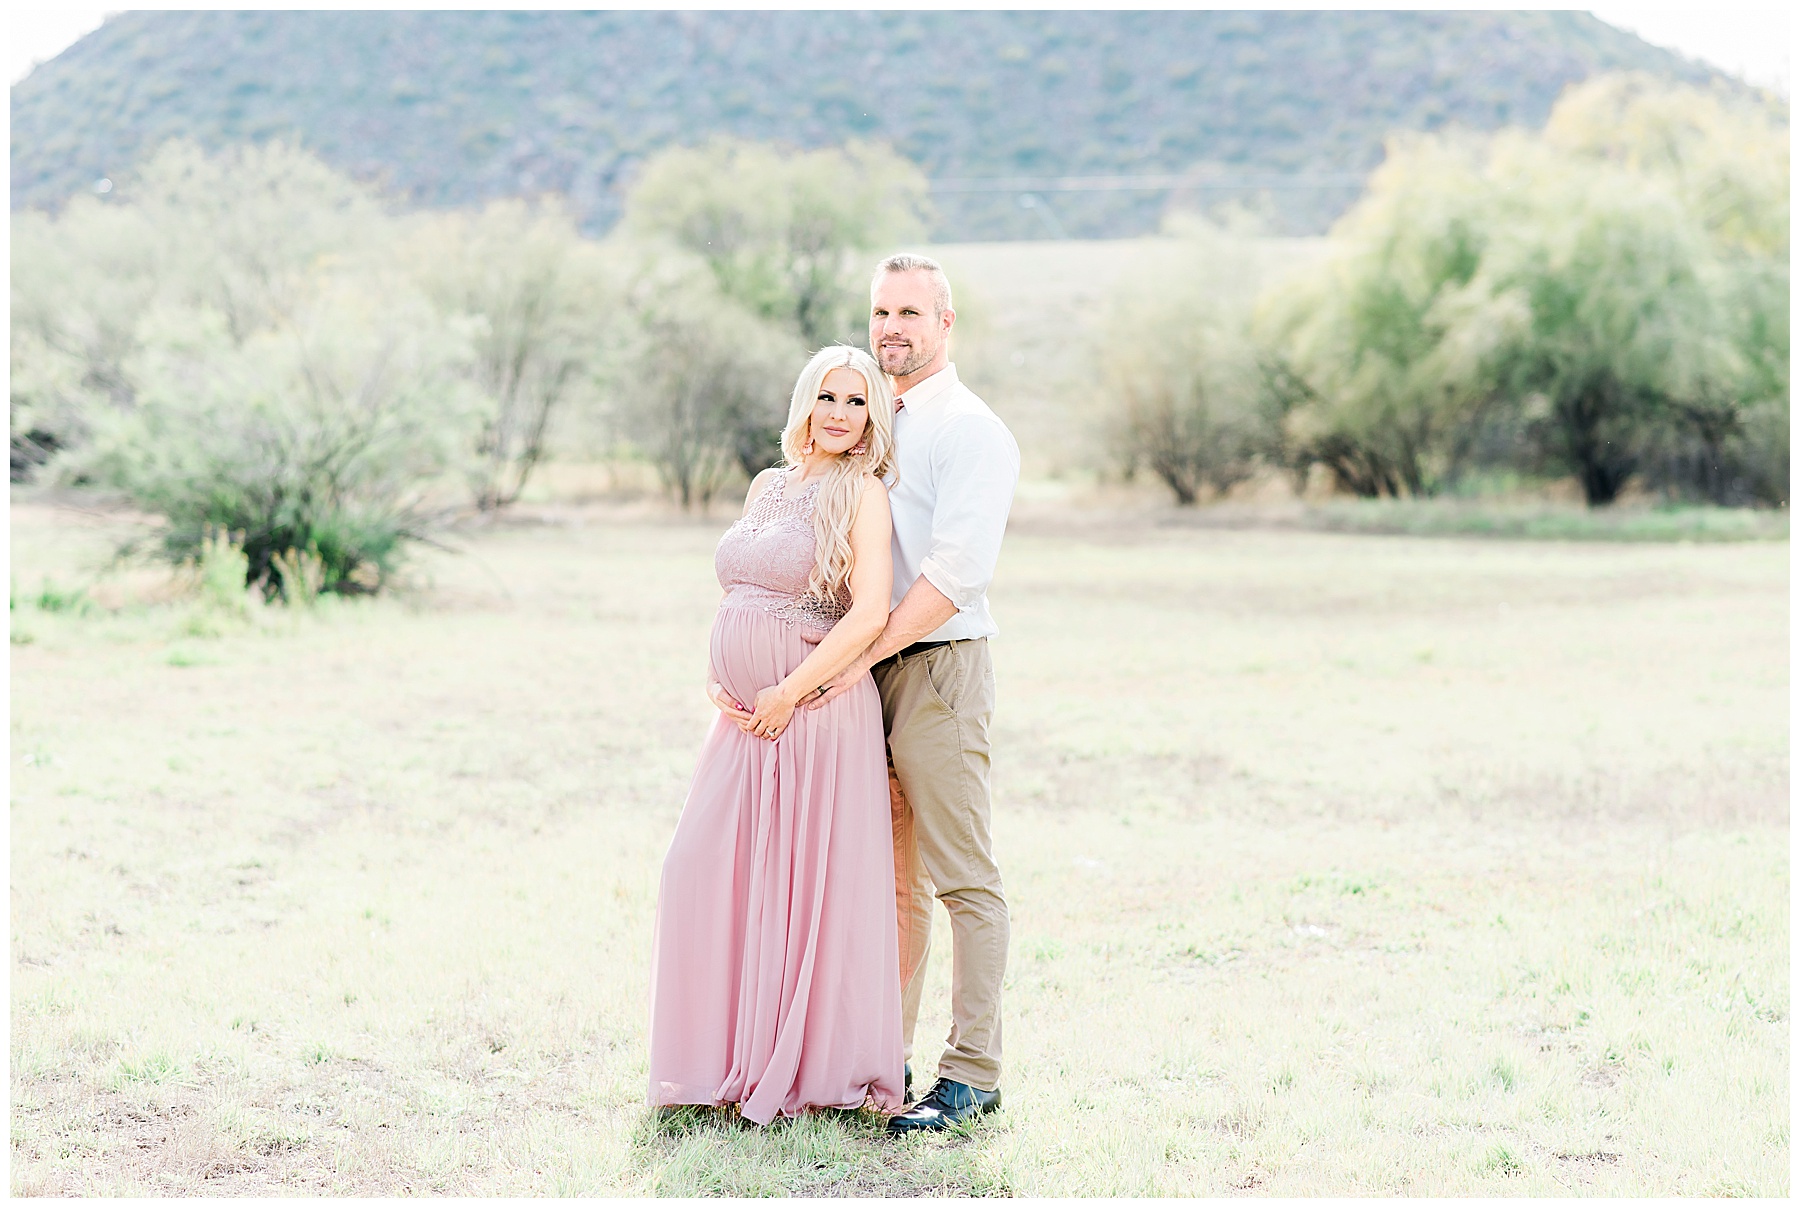 Cooper's-Family-Maternity-Photography-Glendale-Arizona-Ashley-Flug-Photography20.jpg